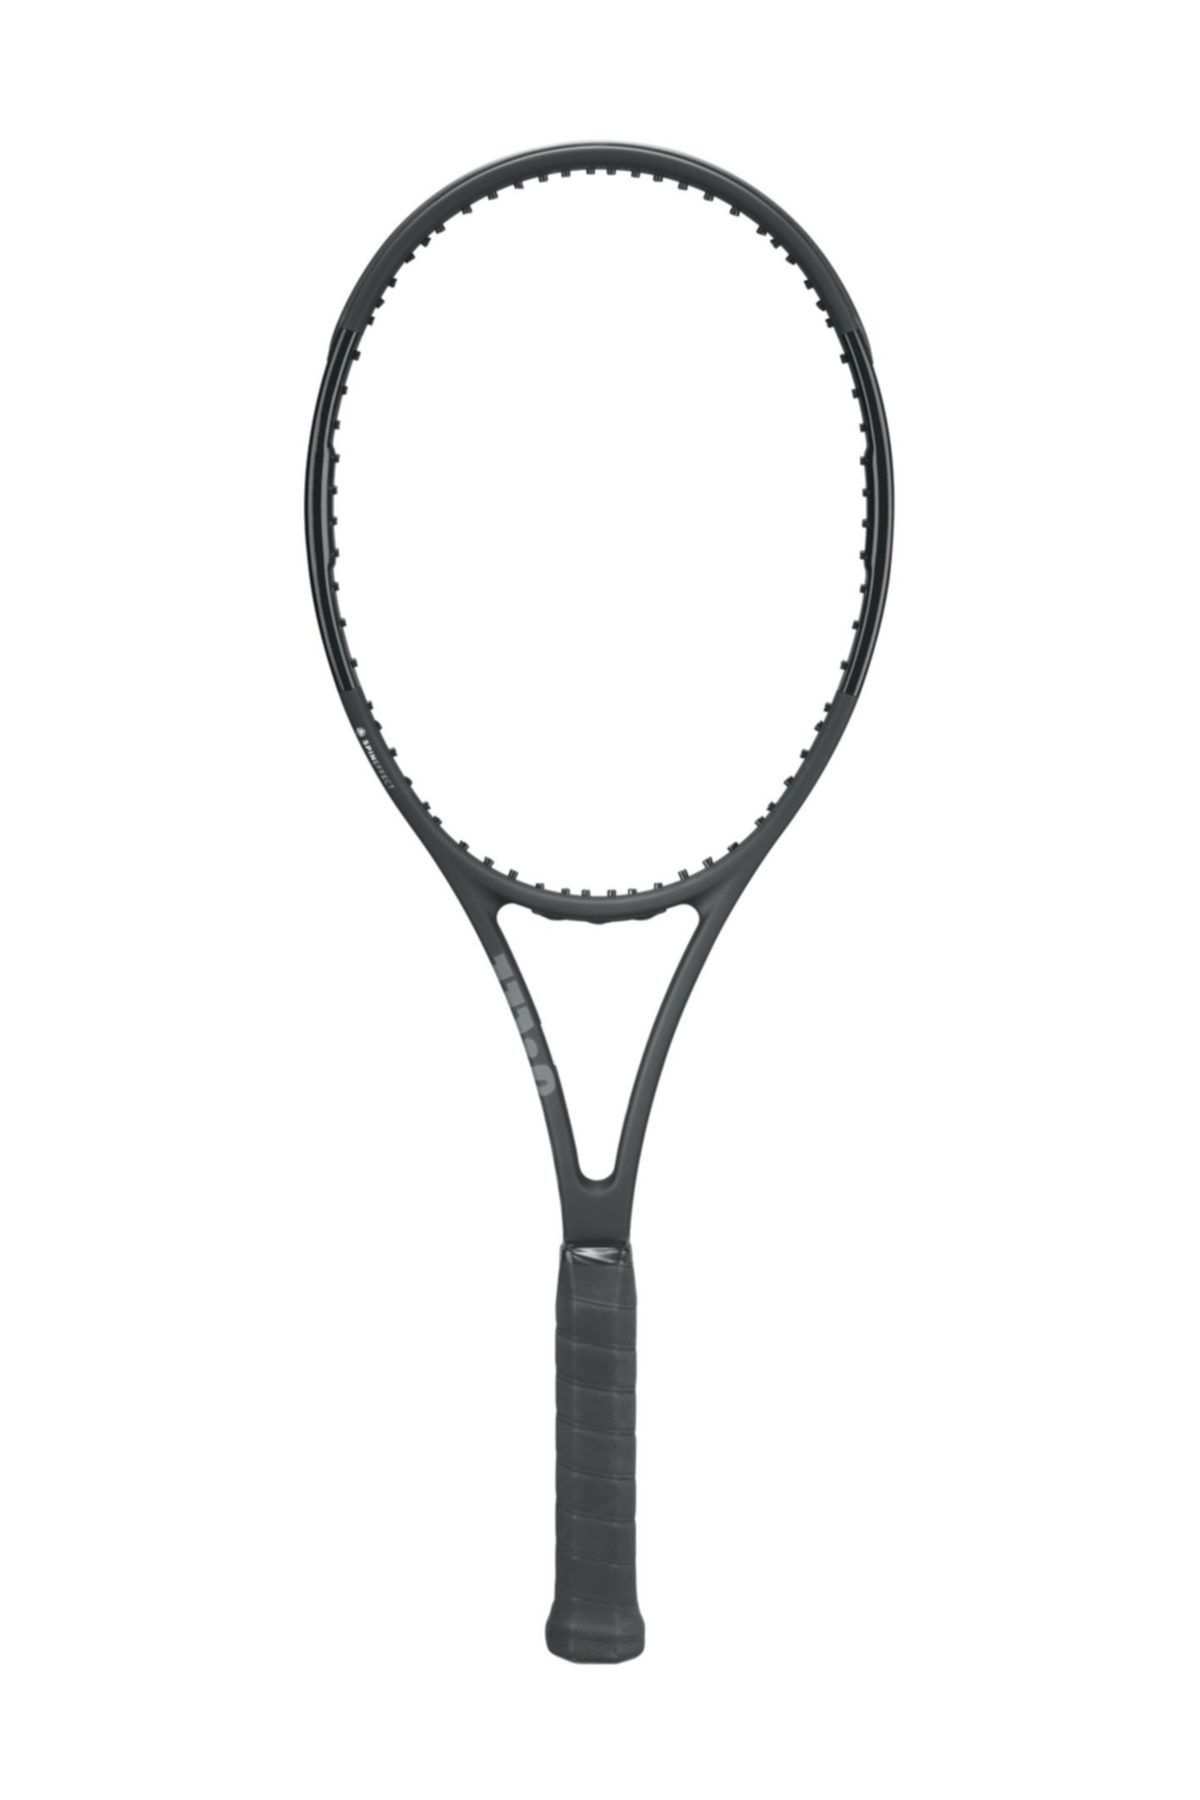 Wilson Tenis Raketi Pro Staff 97ULS  ( WRT73181U0 )